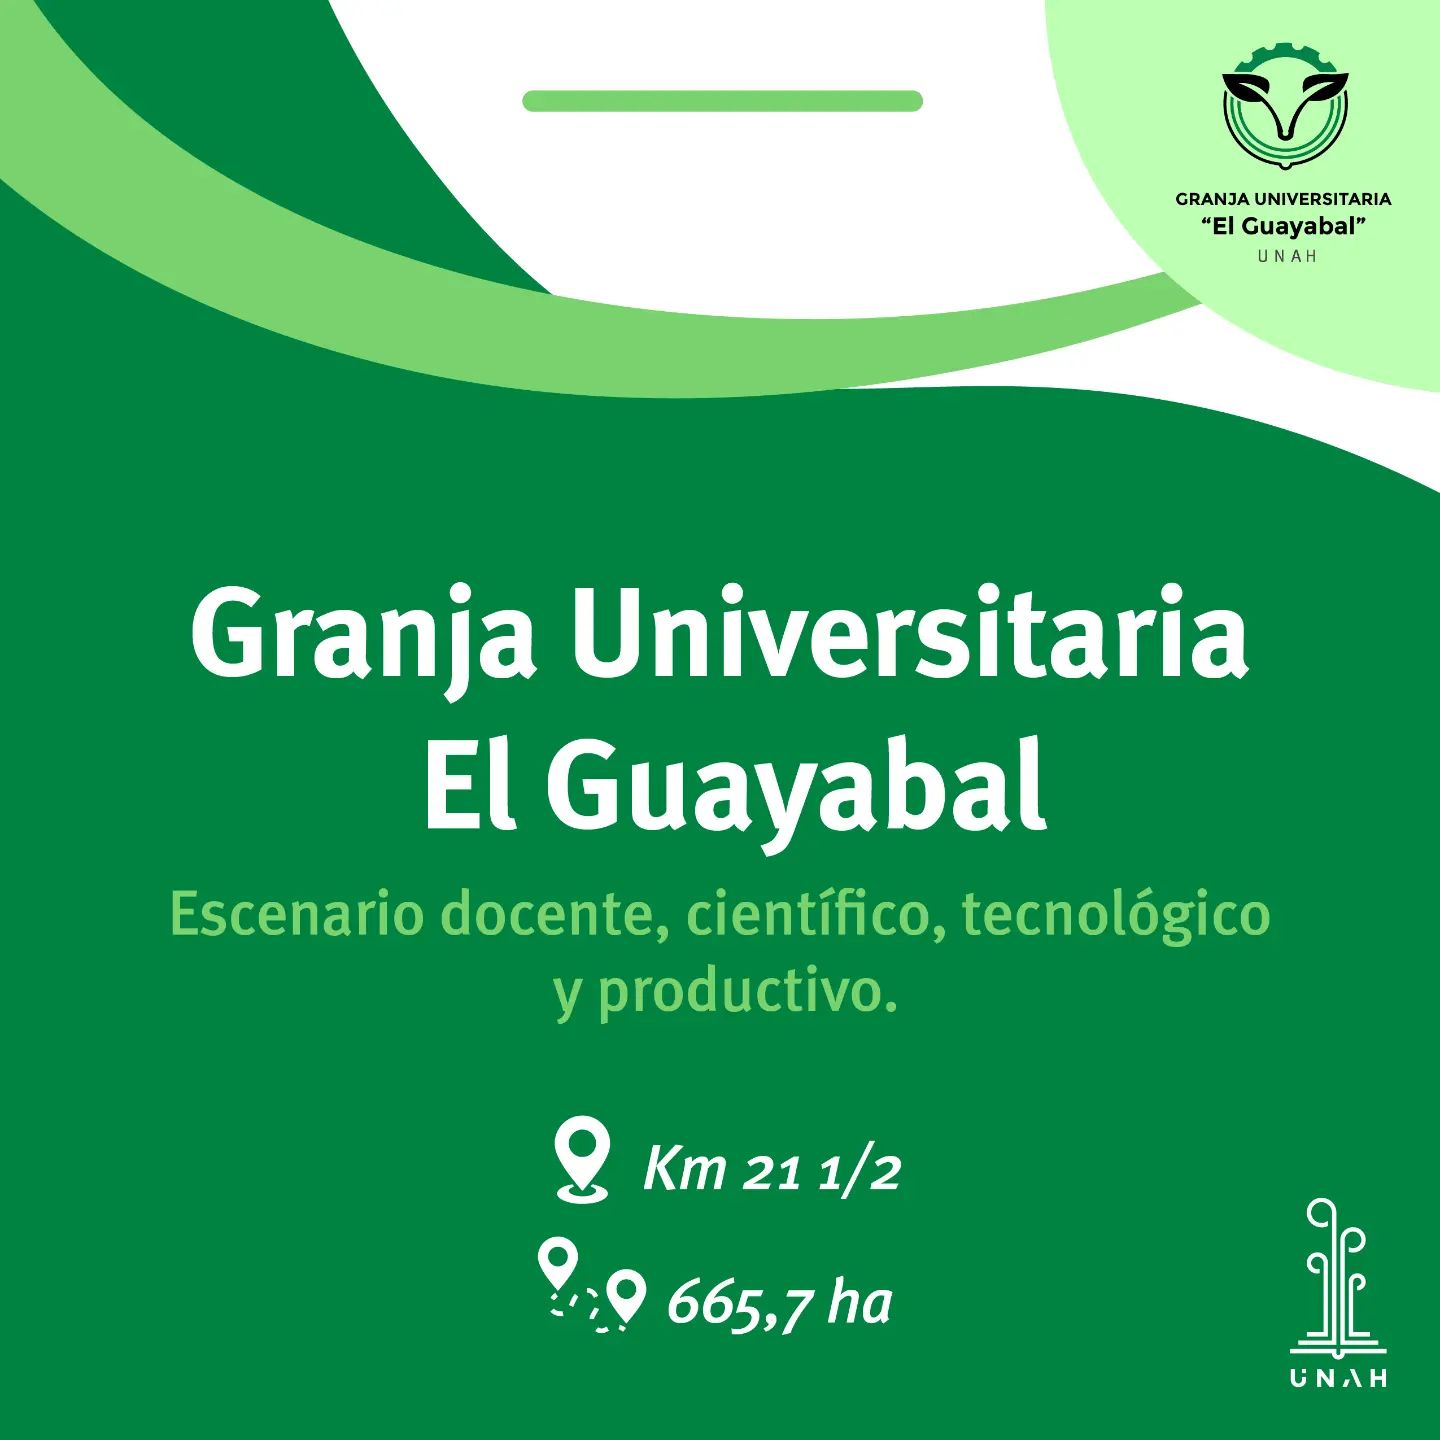 Granja Universitaria El Guayabal: escenario científico, docente, tecnológico y productivo.